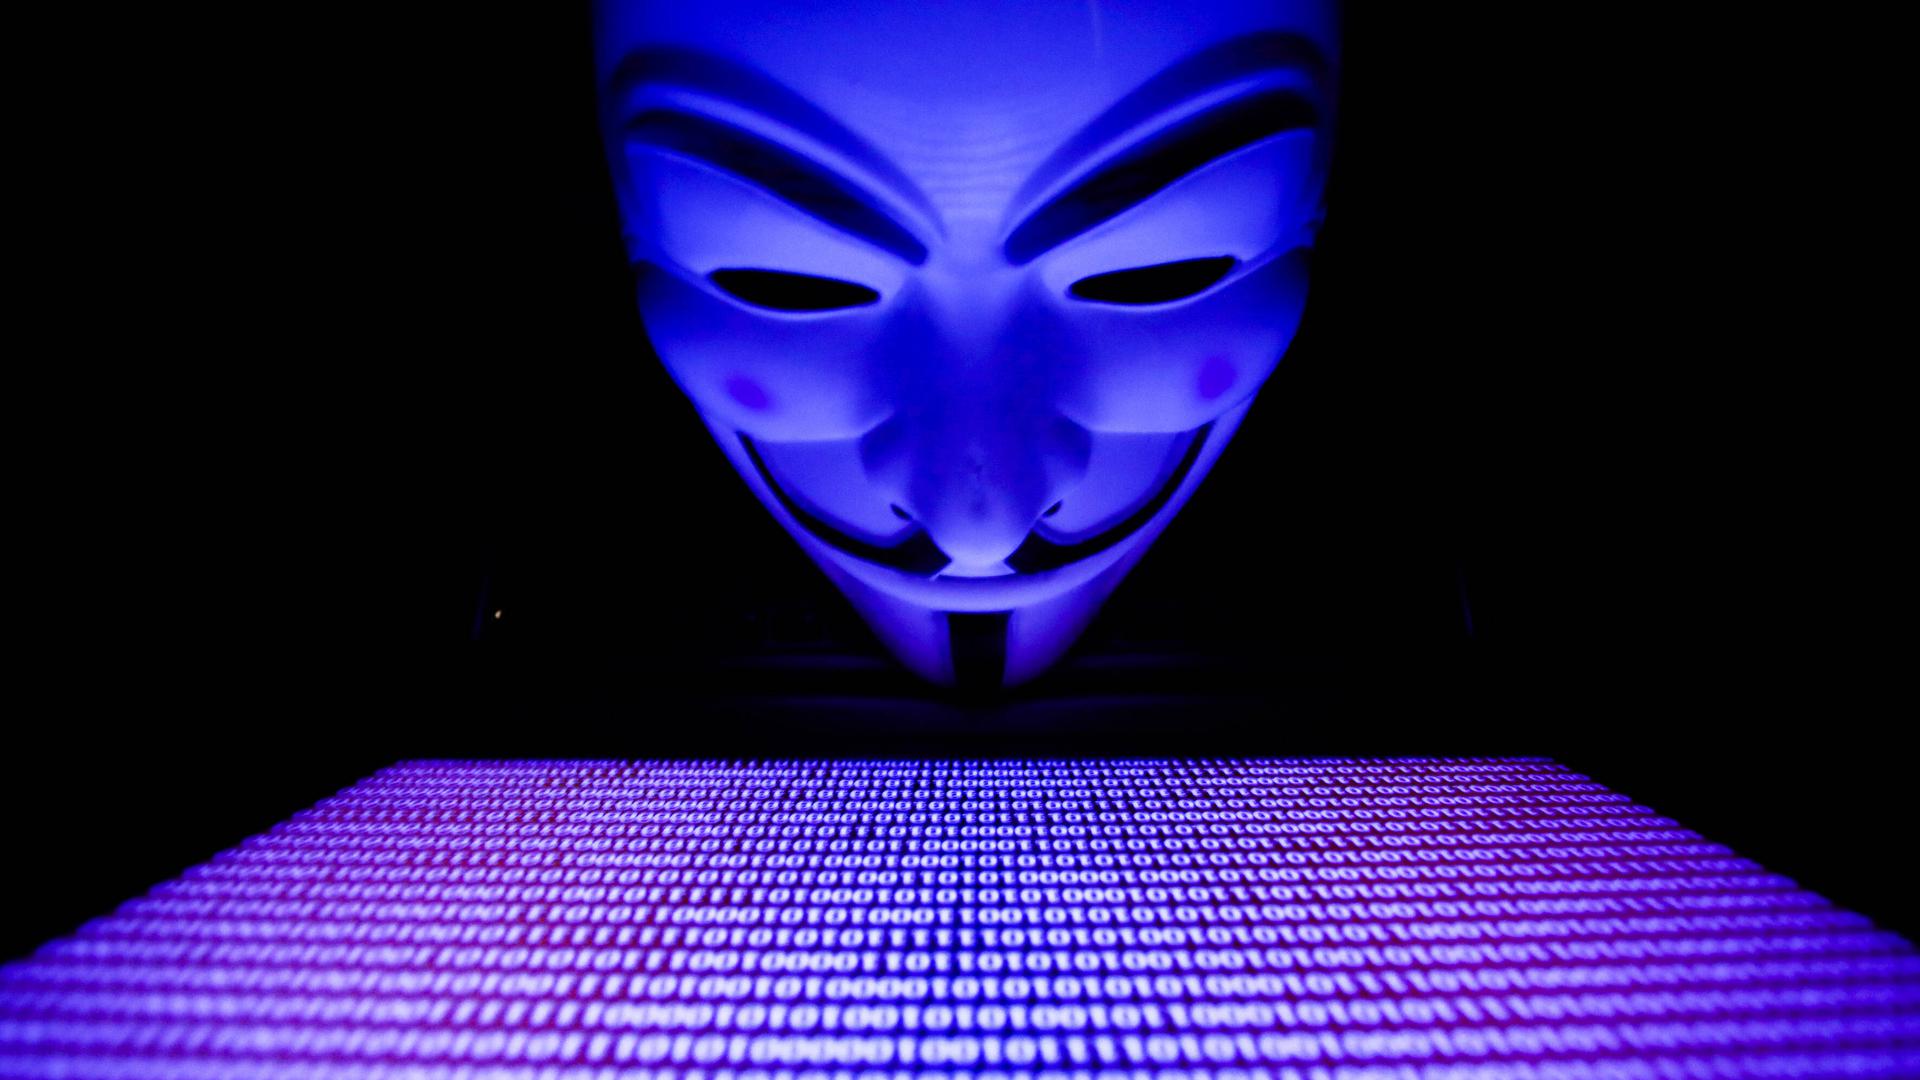 Kampferklärung an Putin: Das Hackerkollektiv „Anonymous“ – im Netz erkennbar an der Maske von Guy Fawkes als Symbol für den Widerstandskampf gegen Diktaturen – hat sich zum Ziel gesetzt, durch Angriffe auf Russland den Ukraine-Krieg zu stoppen.